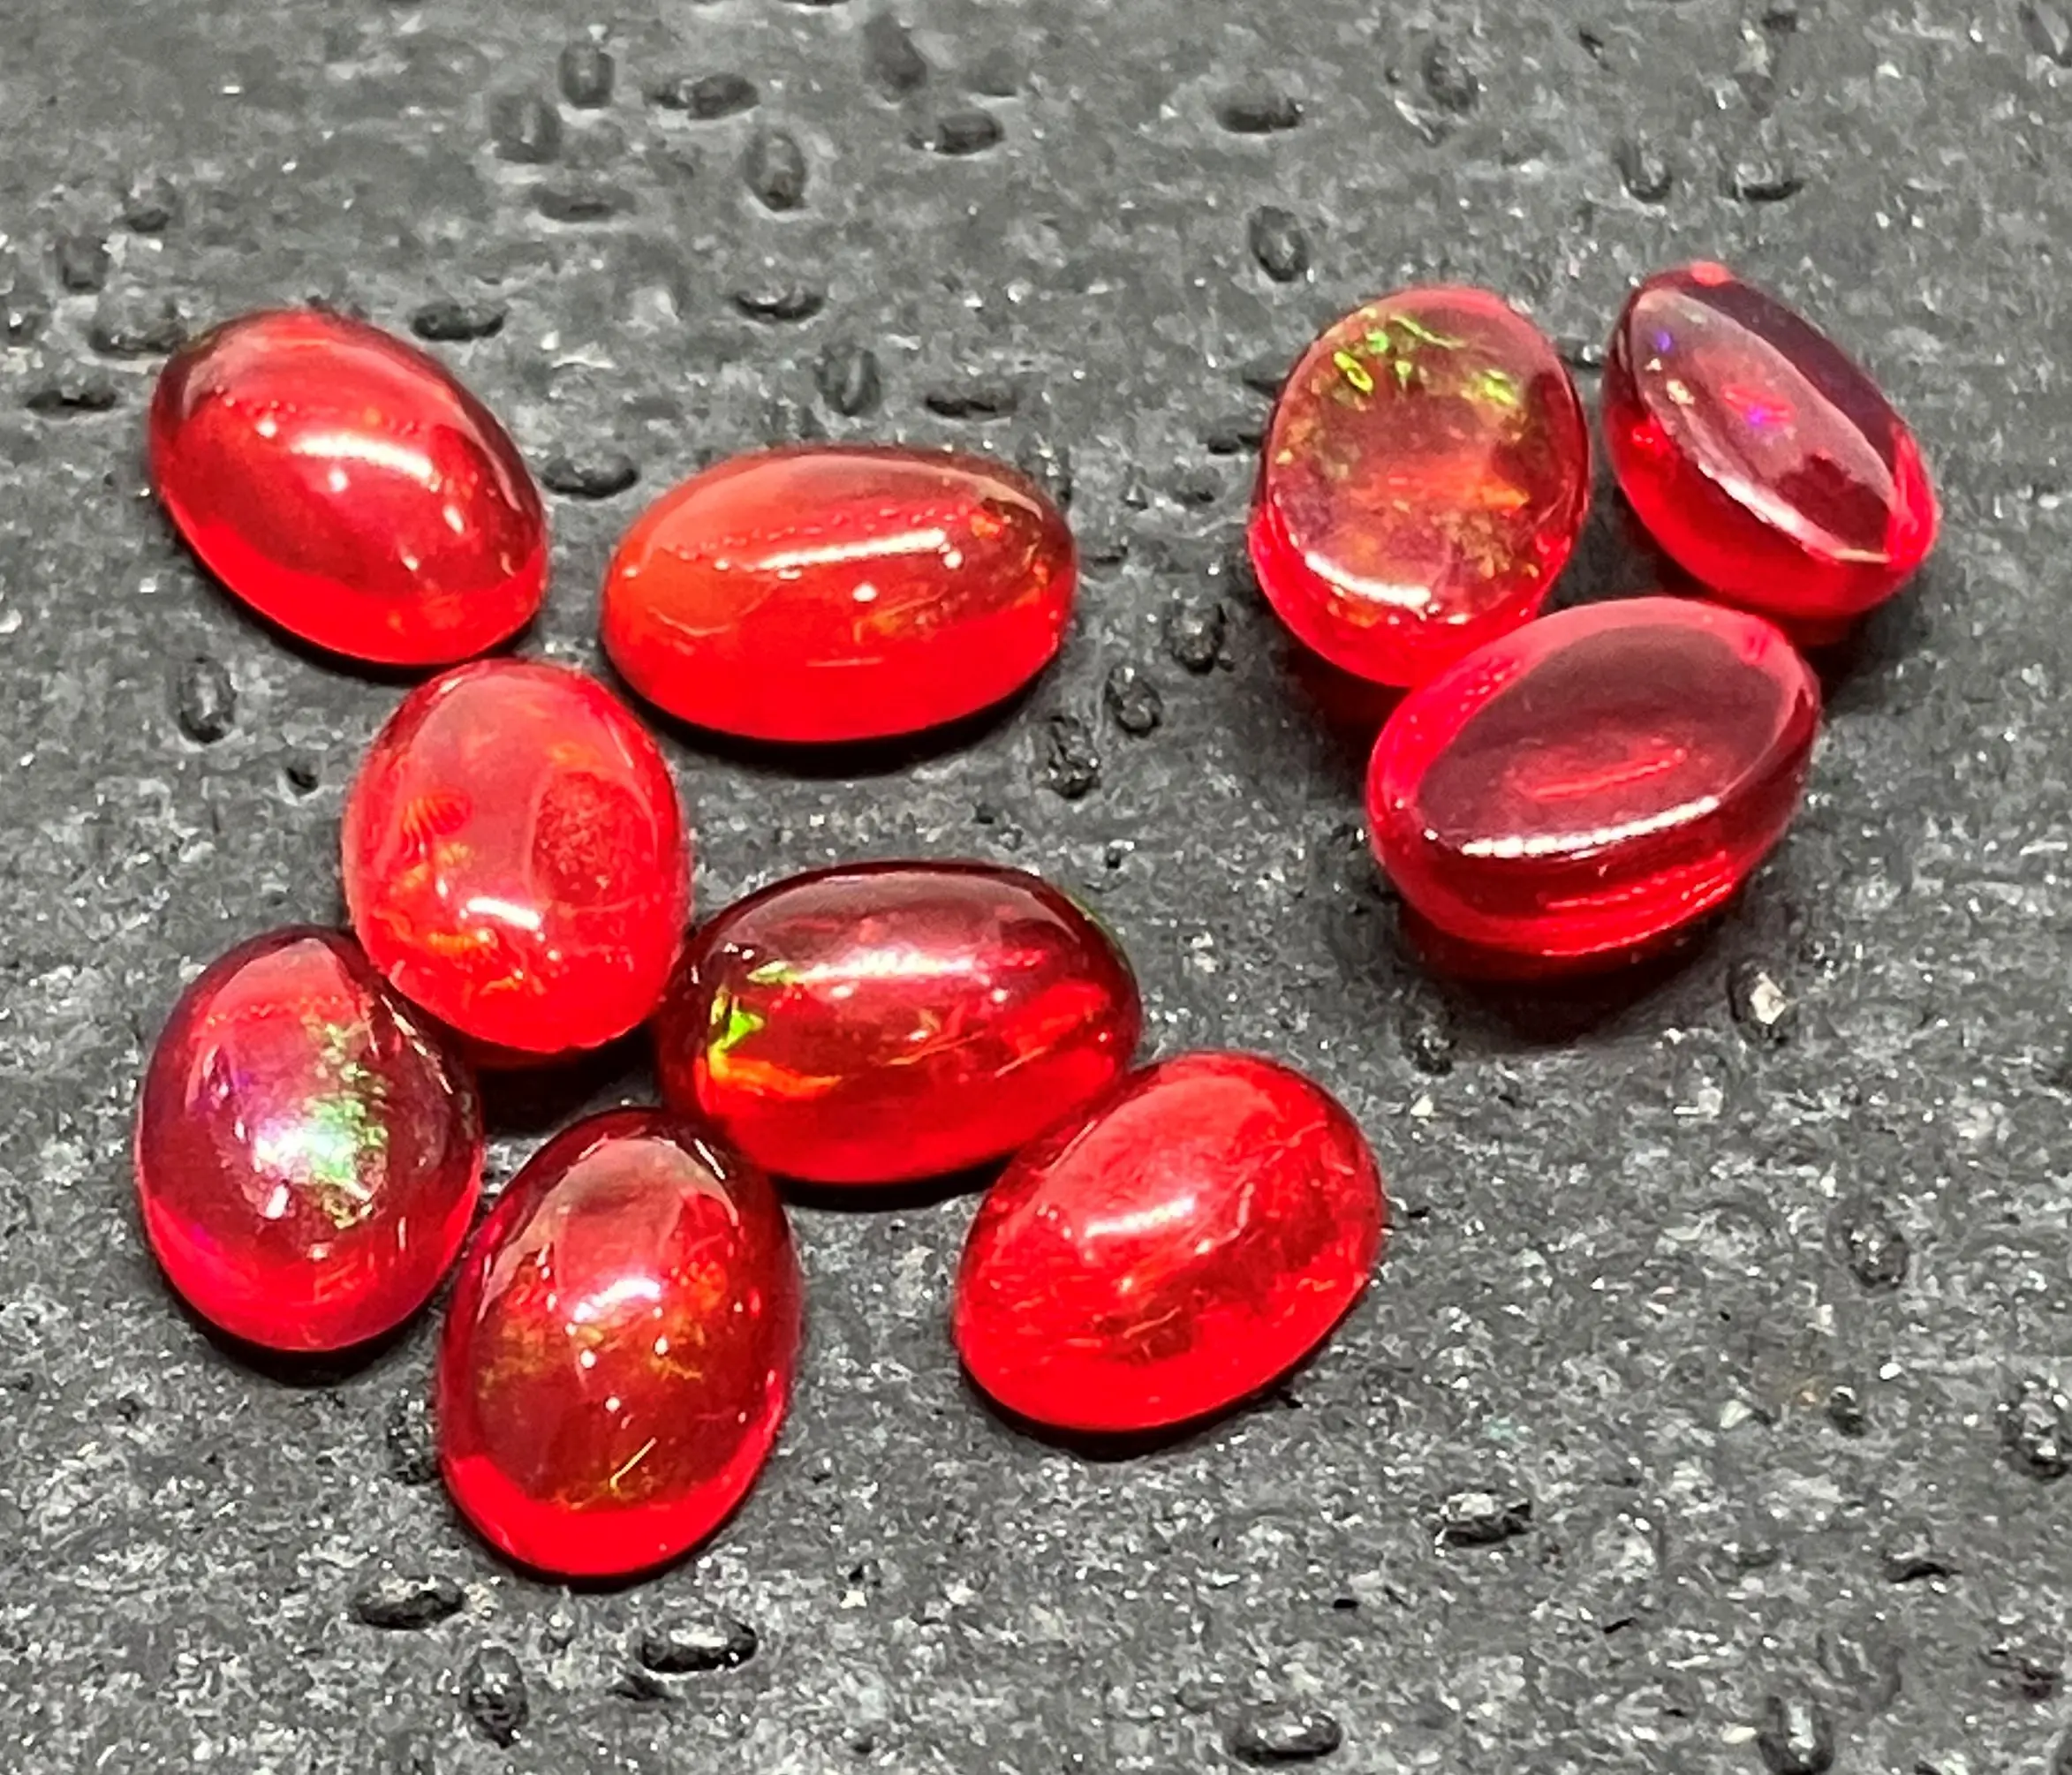 12x16mm Oval Cabochon Red Ethiopian Opal mit flachem Rücken 100% natürlicher loser Edelstein Multi Fire Play Opal für alle Arten von Schmuck herstellung